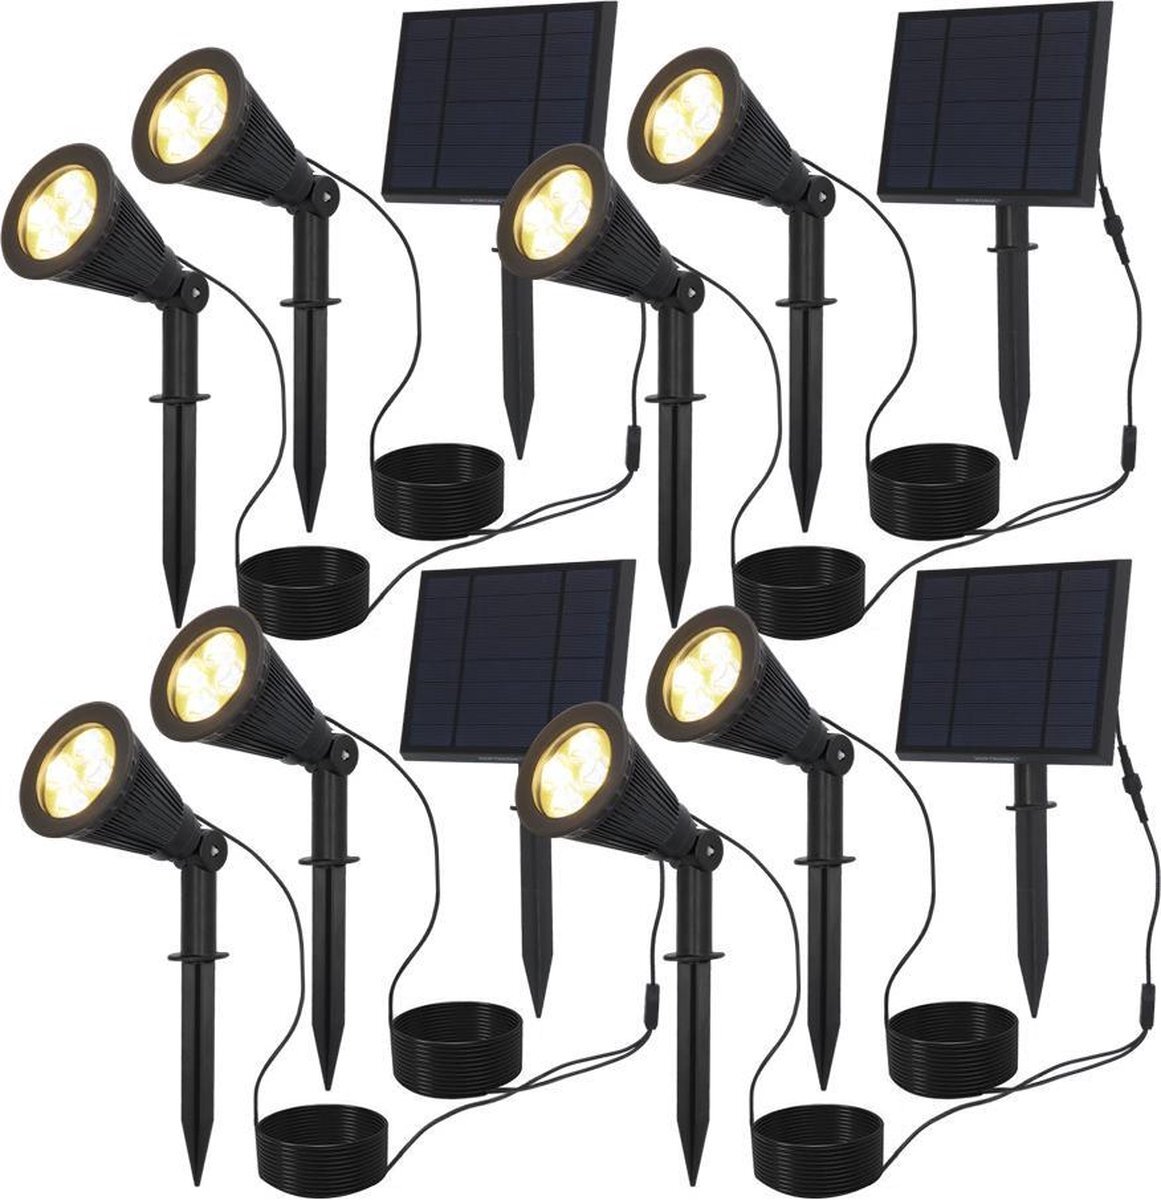 HOFTRONIC 4x Bend duo - Solar Tuinspot - Zwart - Los zonnepaneel - IP65 Waterdicht - Schemerschakelaar - Tot 12 uur brandtijd - Kantelbaar - Winter solar - 3000K Warm Wit (sfeervol) - Tuinverlichting op zonne-energie - Ook als wandlamp te gebruiken